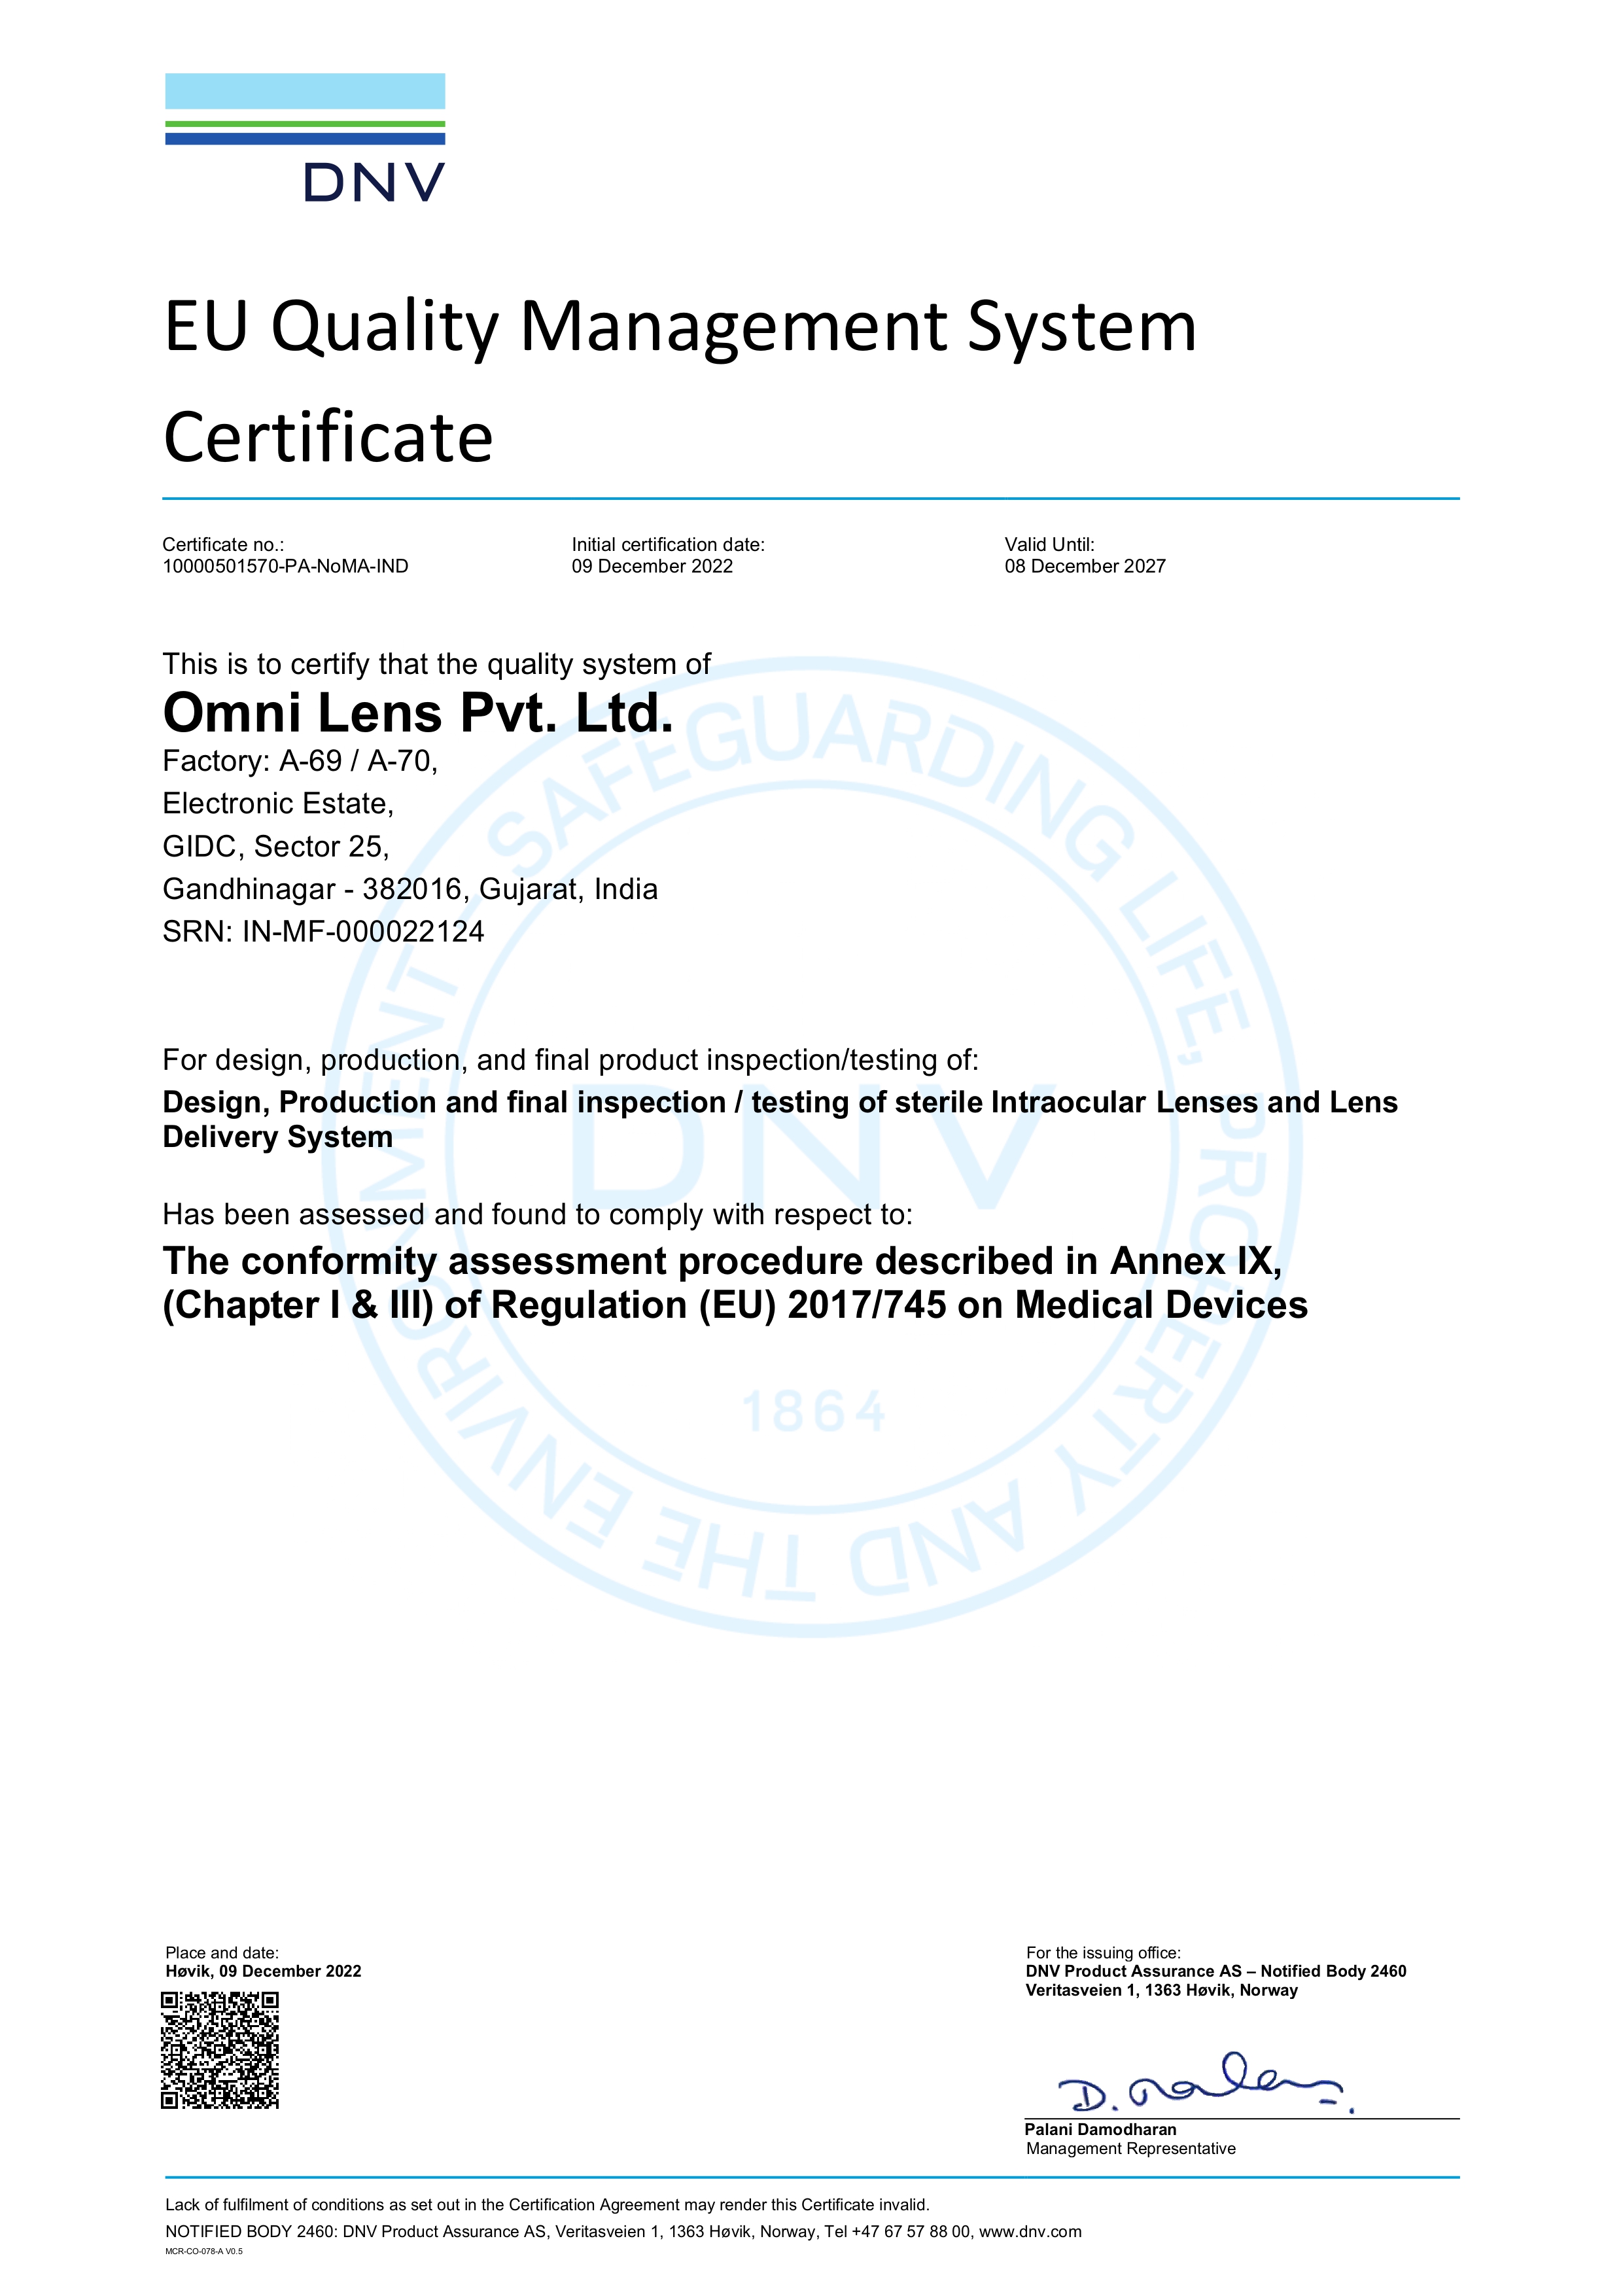 Omni CE certificate